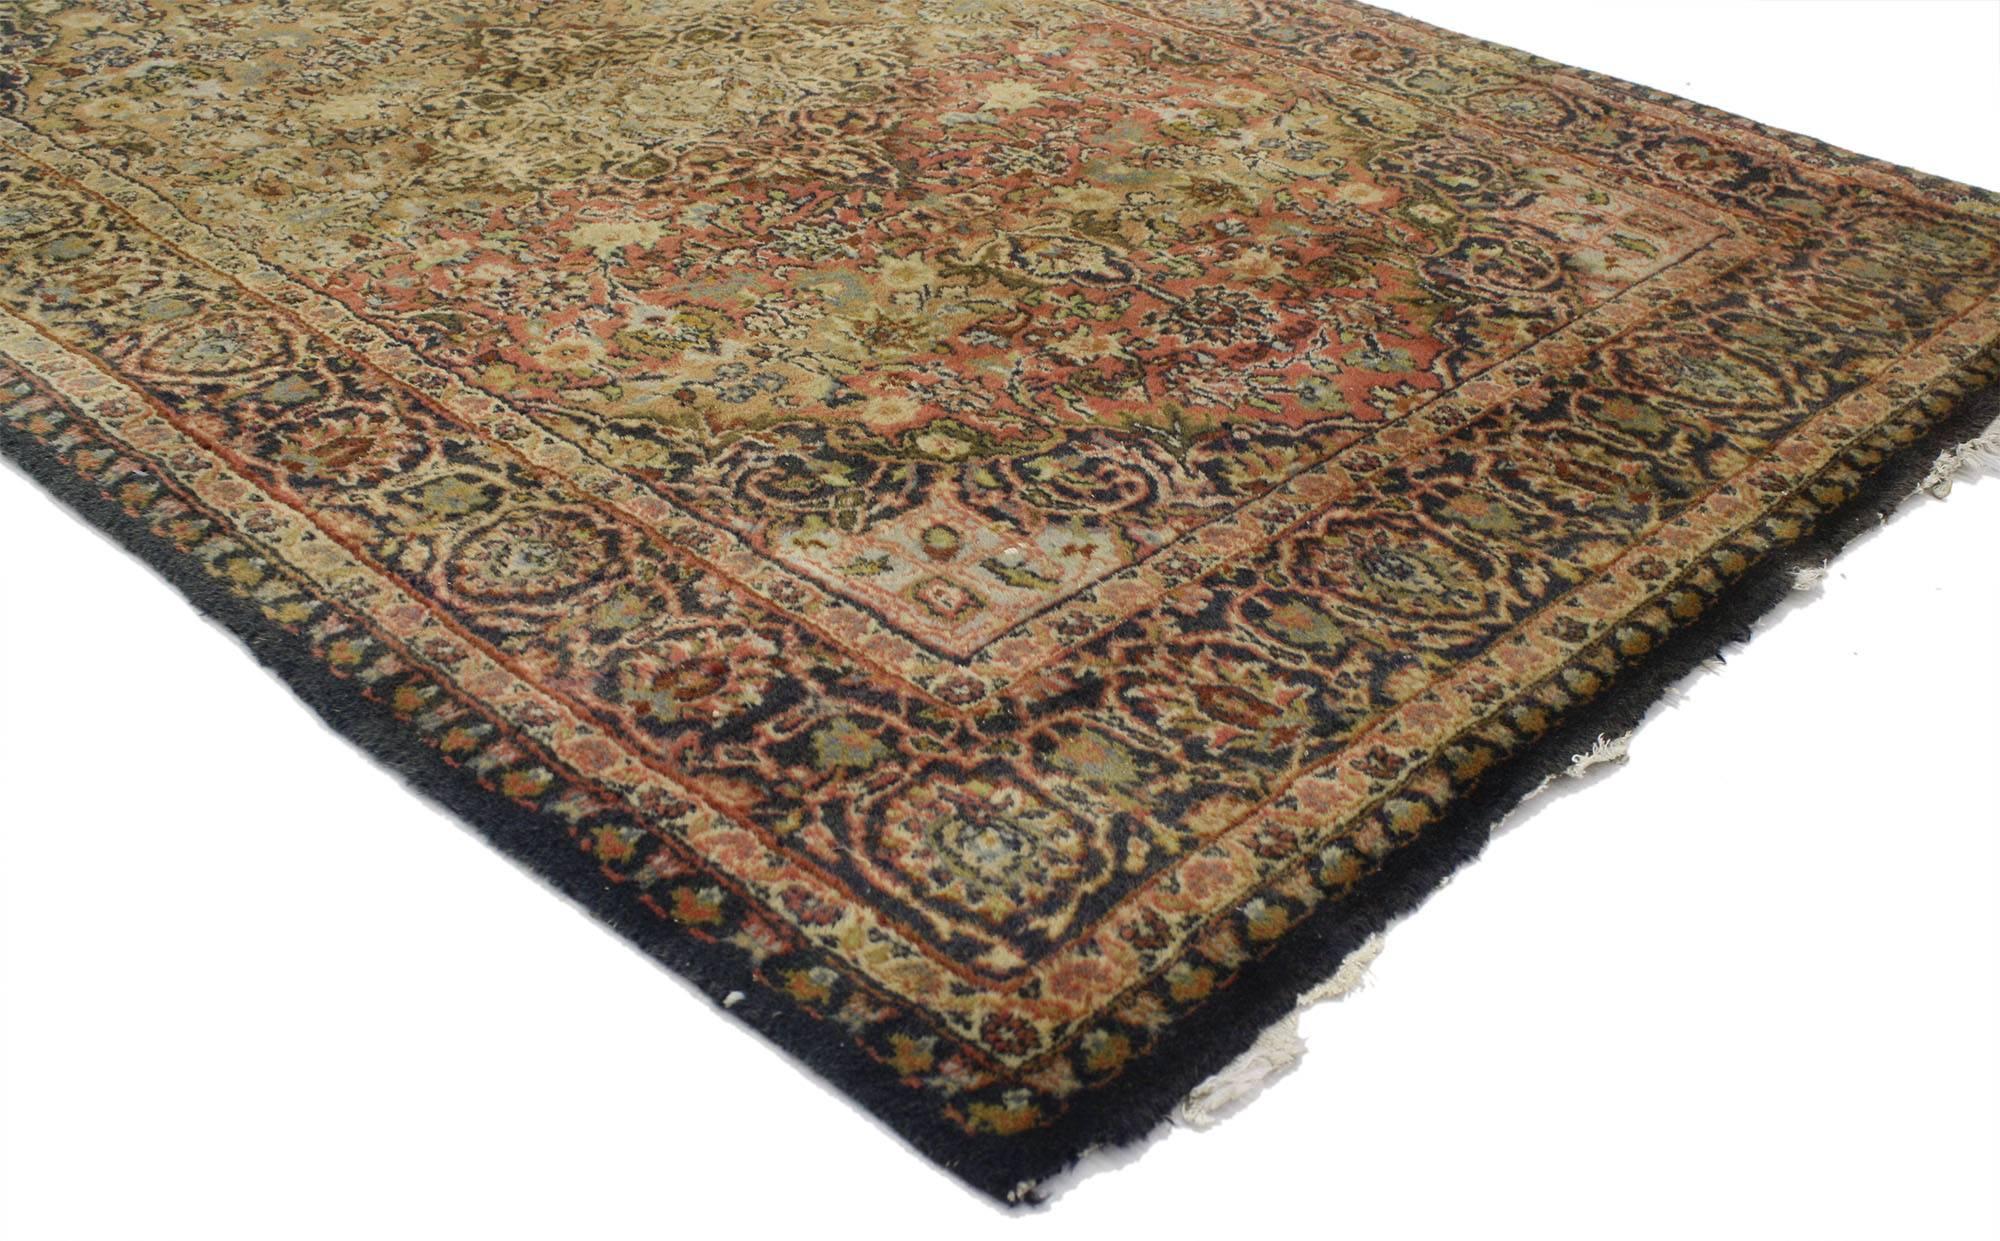 77080, tapis d'accentuation Persan Kashan vintage avec style colonial espagnol. Ce tapis d'accent Persan vintage Kashan en laine nouée à la main présente un médaillon en forme de losange cuspidé flanqué d'une palmette de chaque côté et entouré d'un